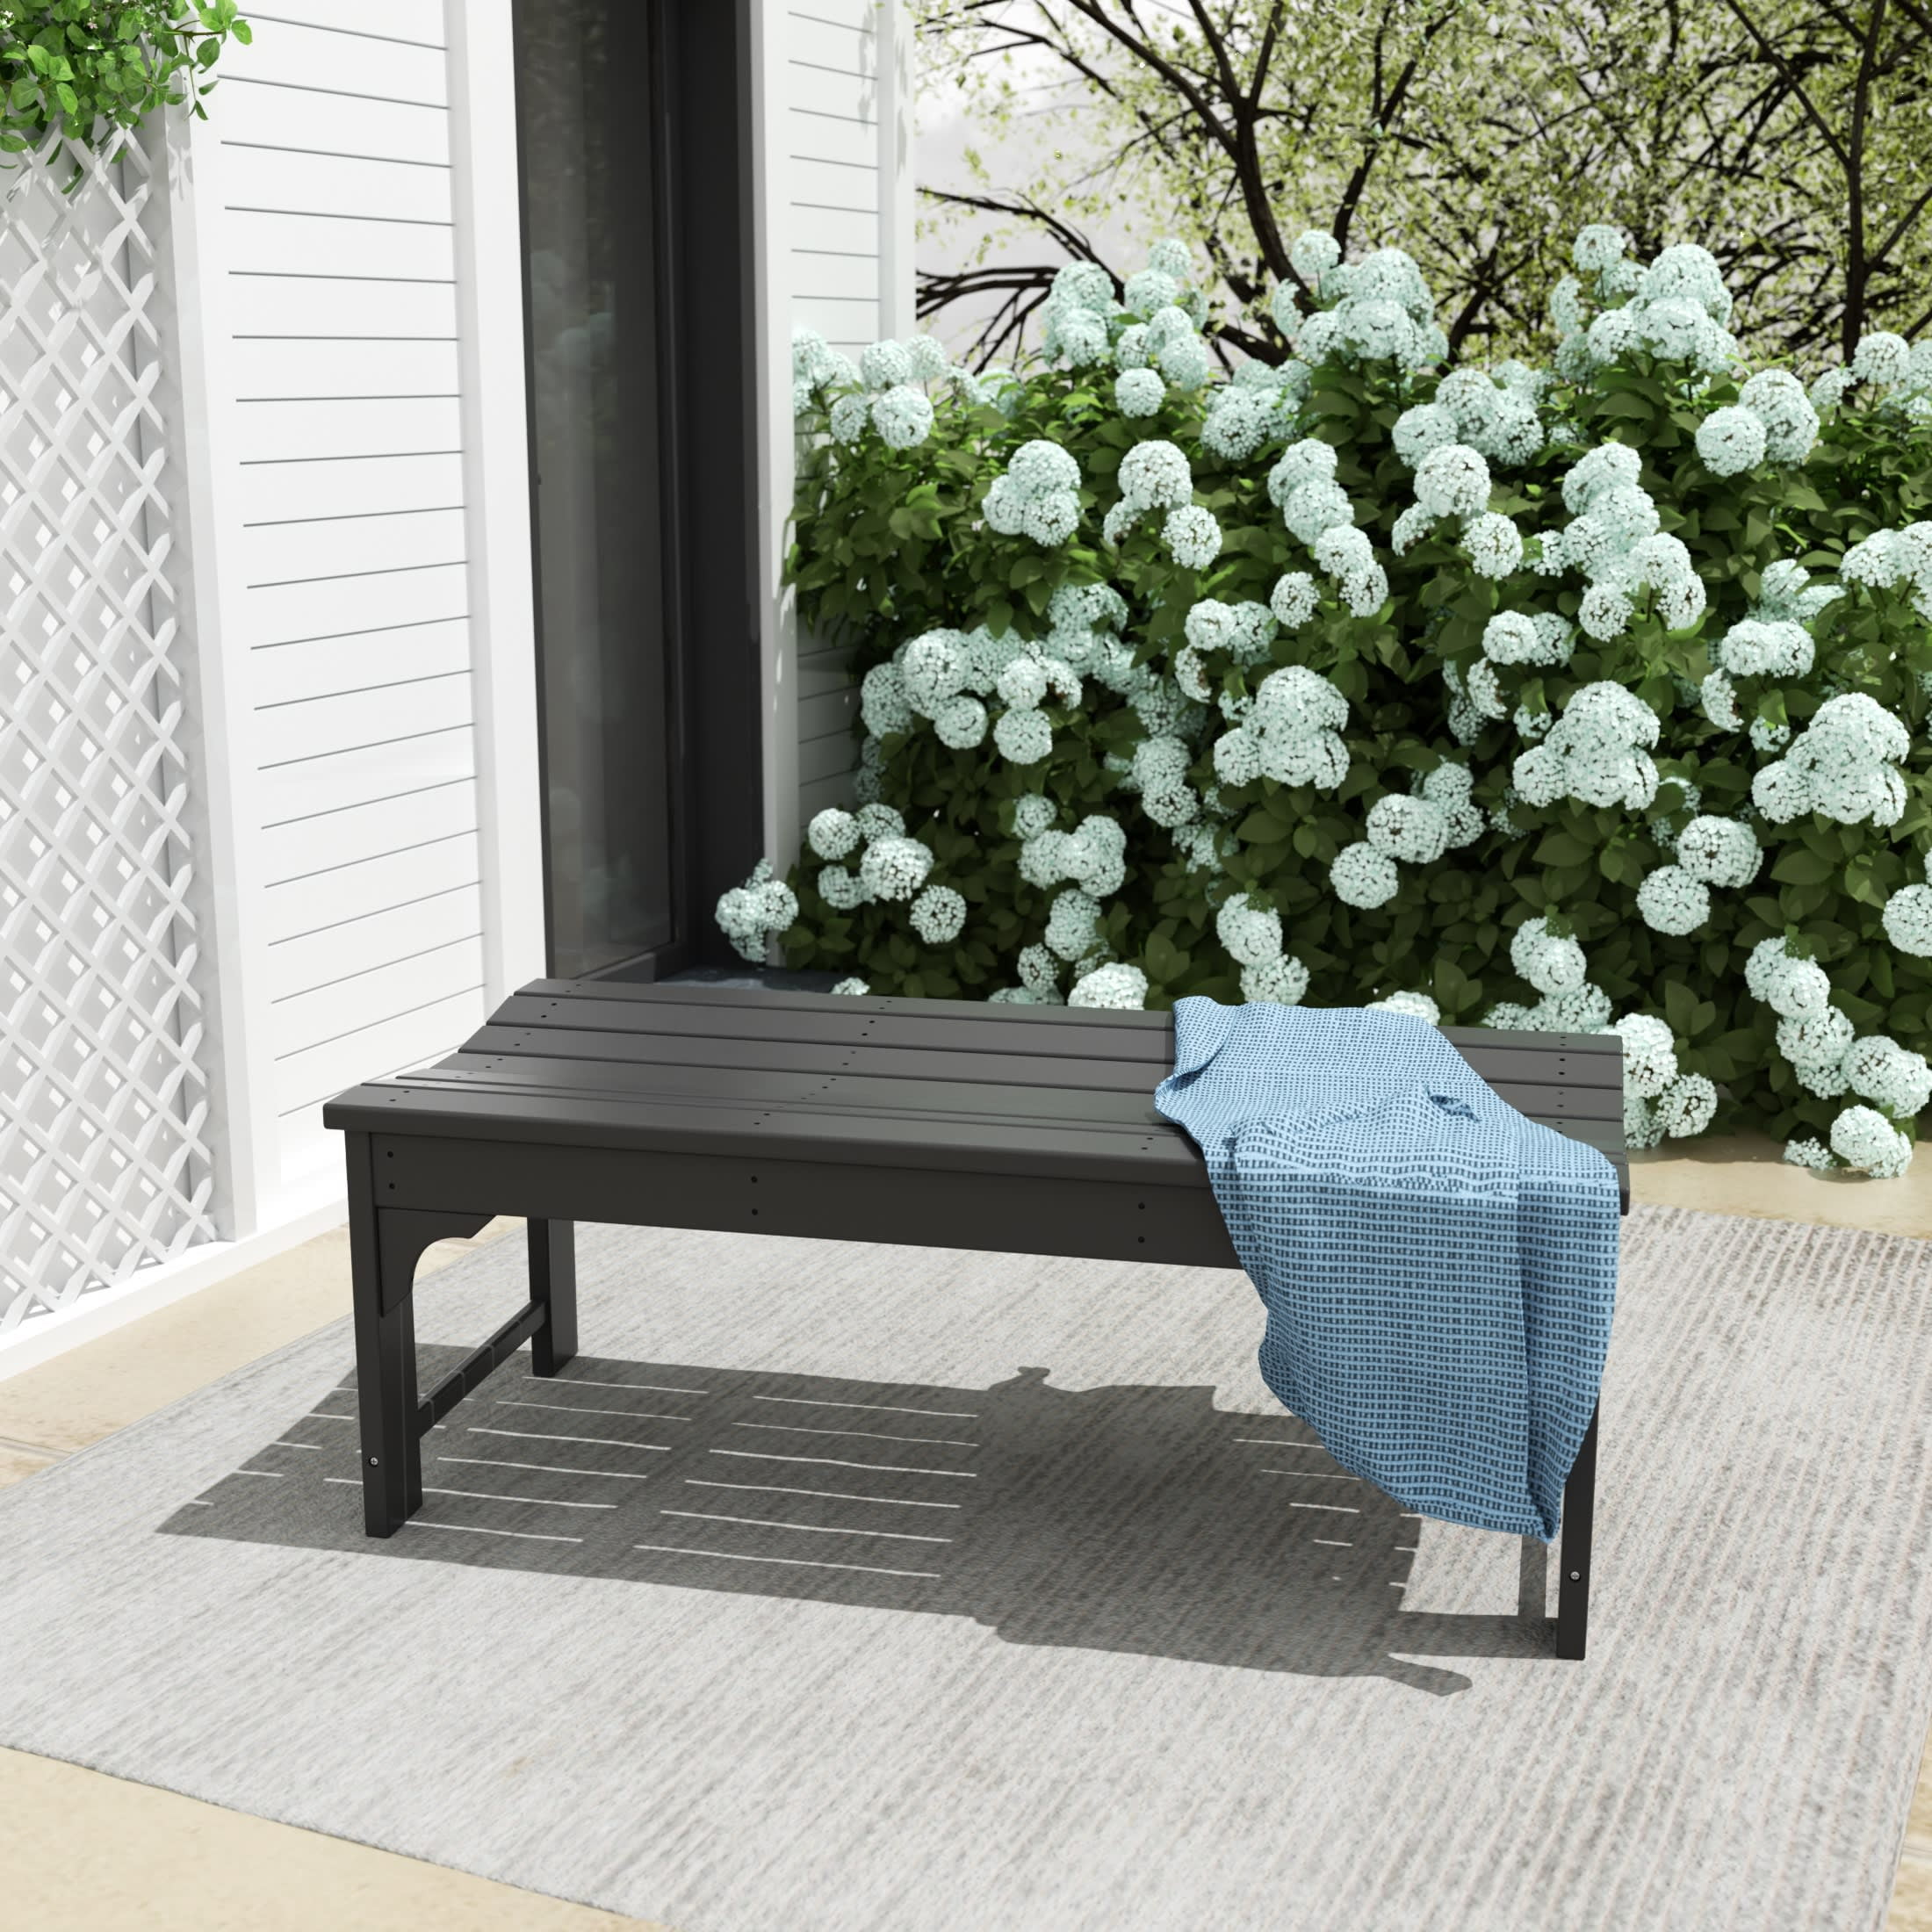 Gray Plastic Outdoor Patio Bench, HDPE Garden Bench